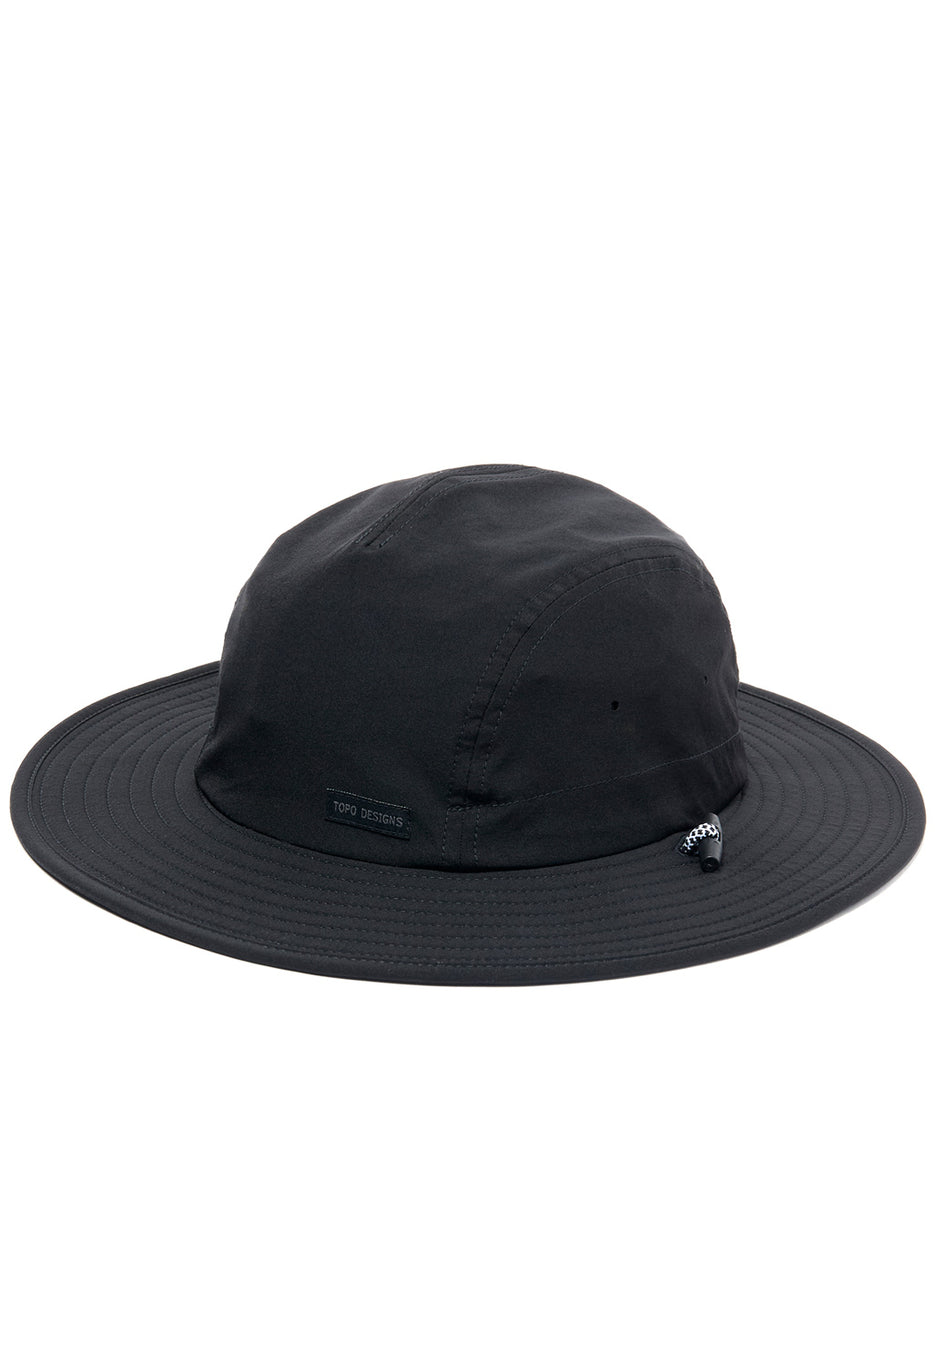 Topo Designs Sun Hat - Black